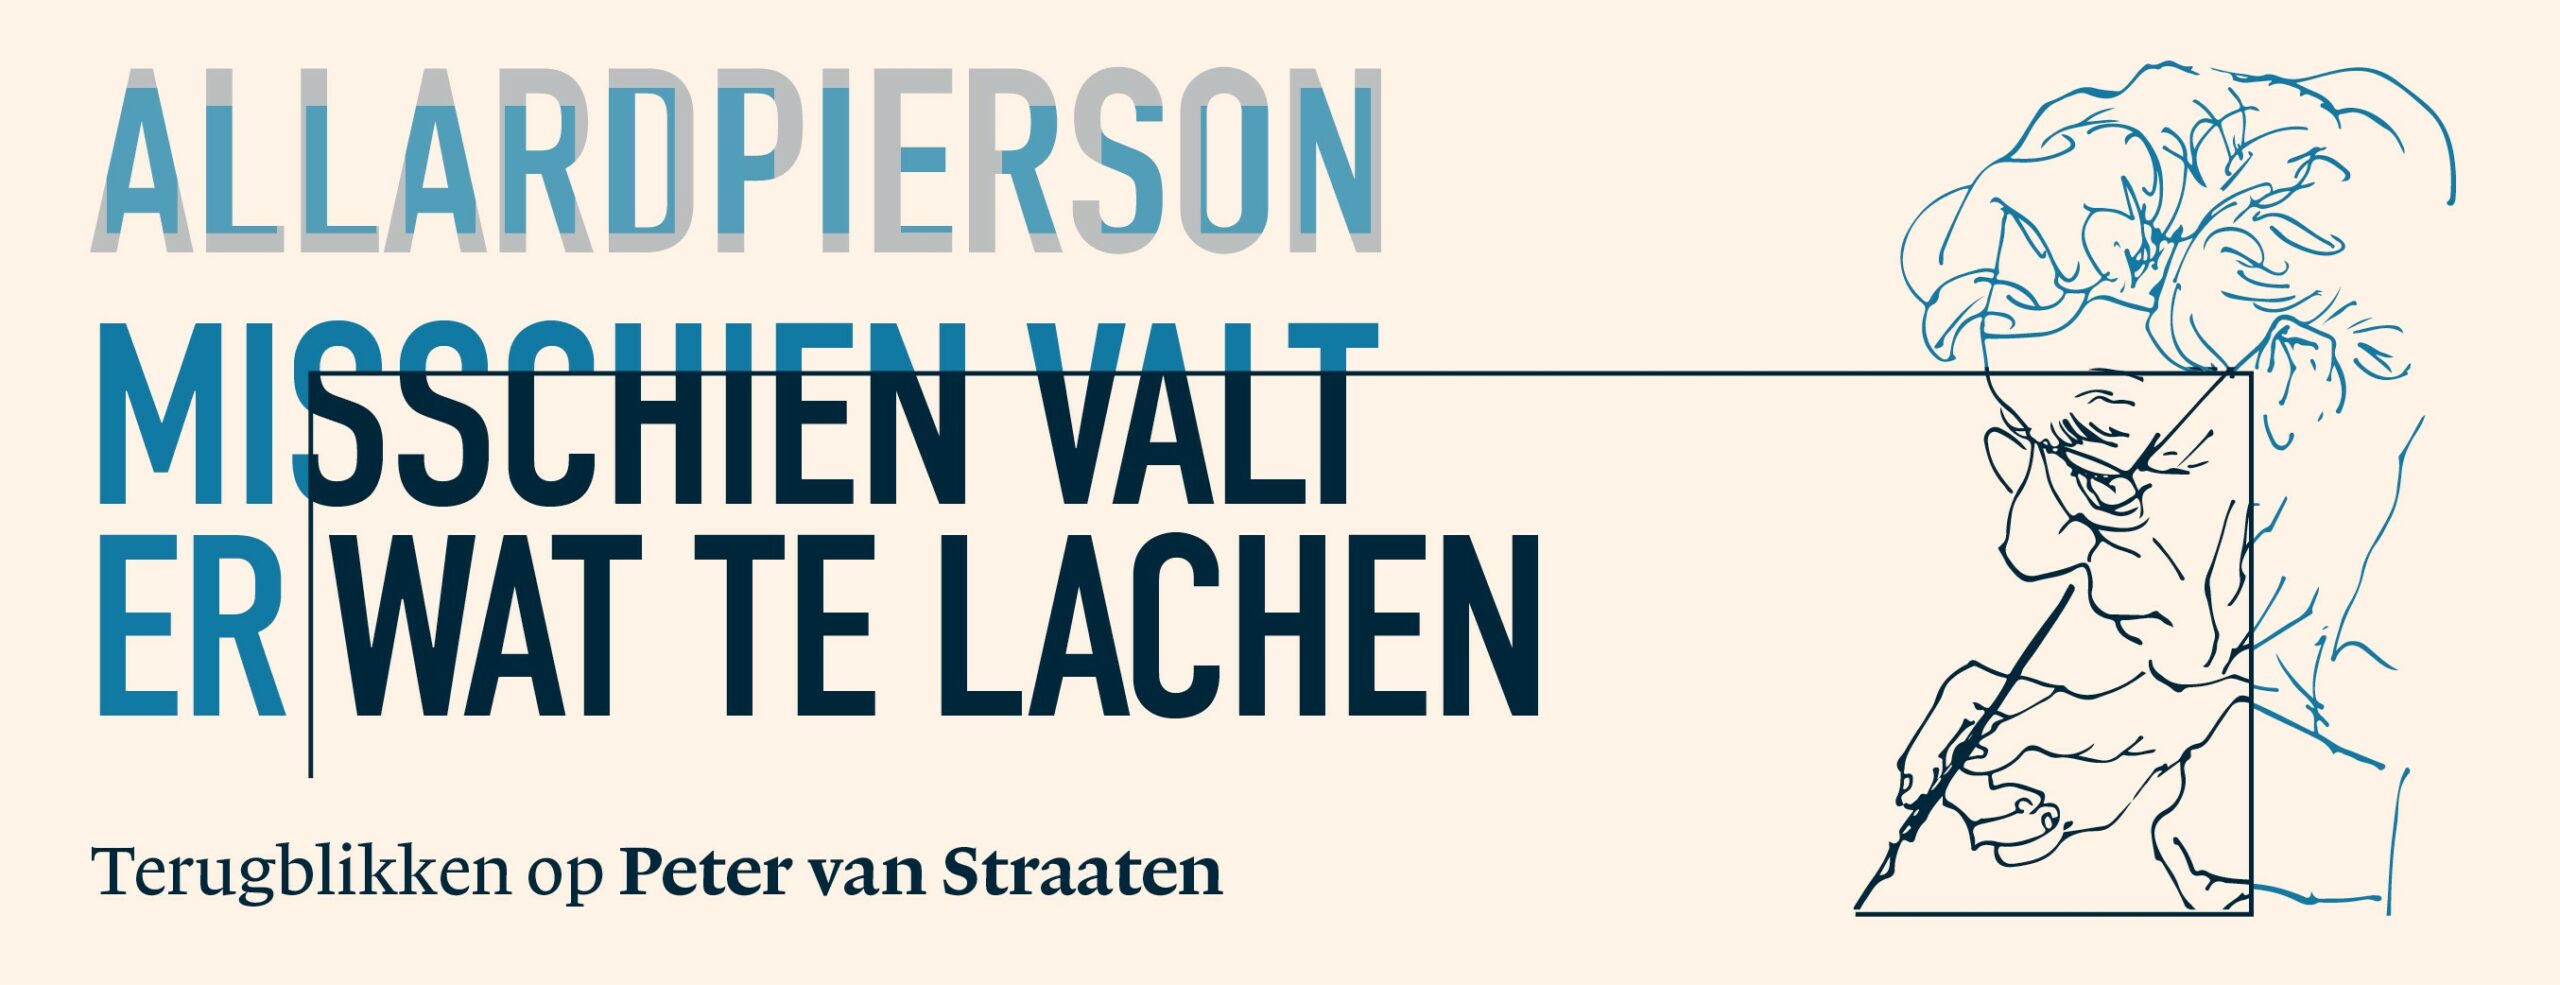 (c) Peter van Straaten